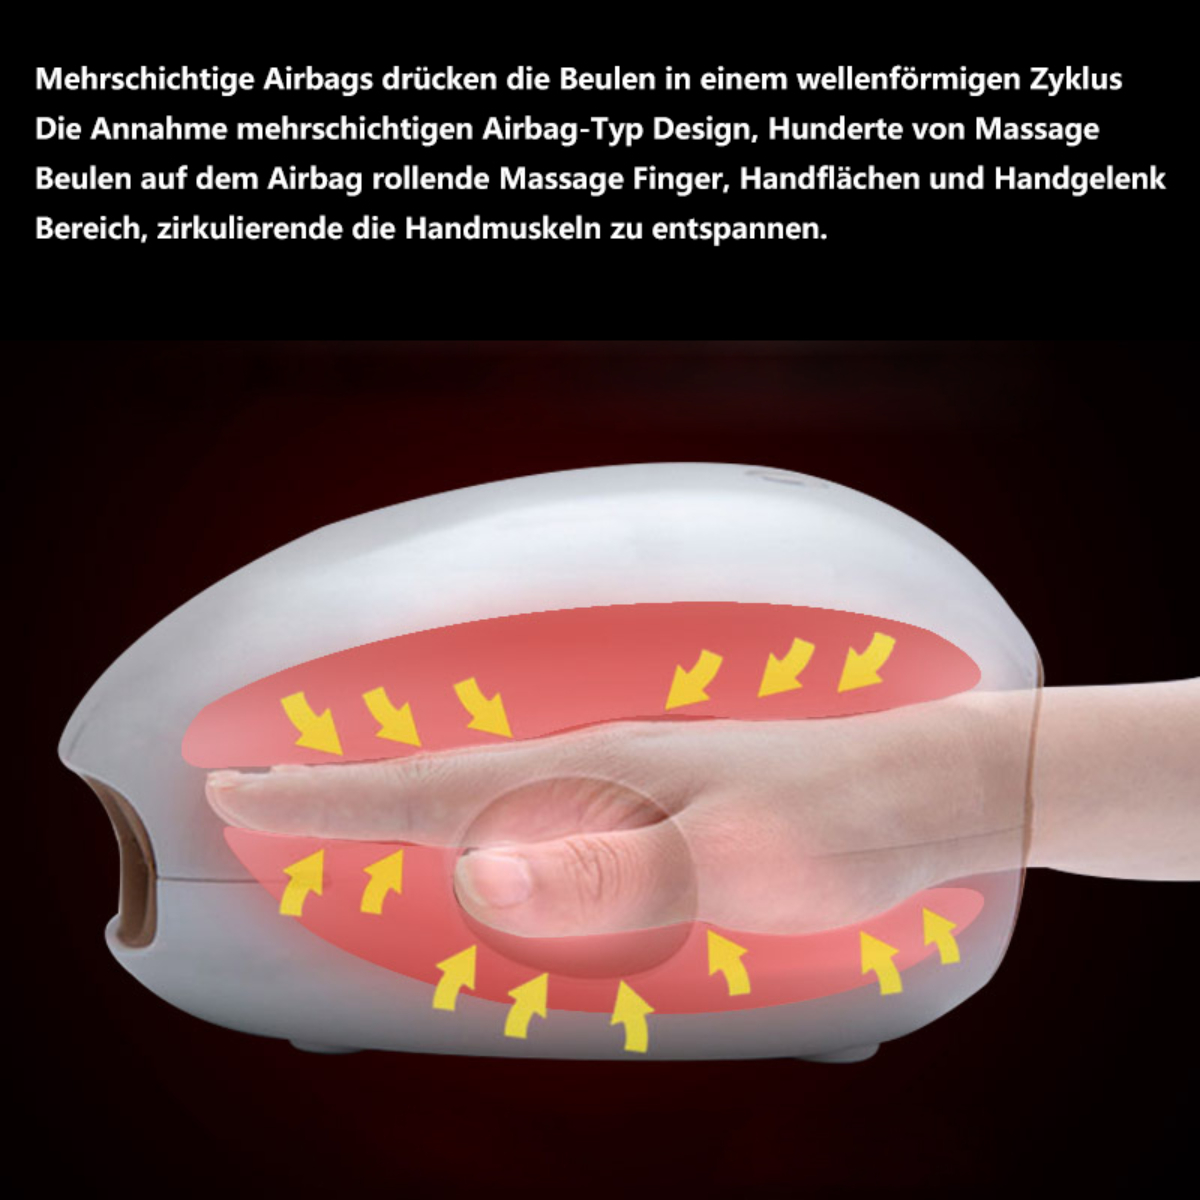 BYTELIKE Handmassagegerät Handmassagegerät Physiotherapie Kneten Massager Handmassagegerät Fingergelenk Hot Airbag Palm